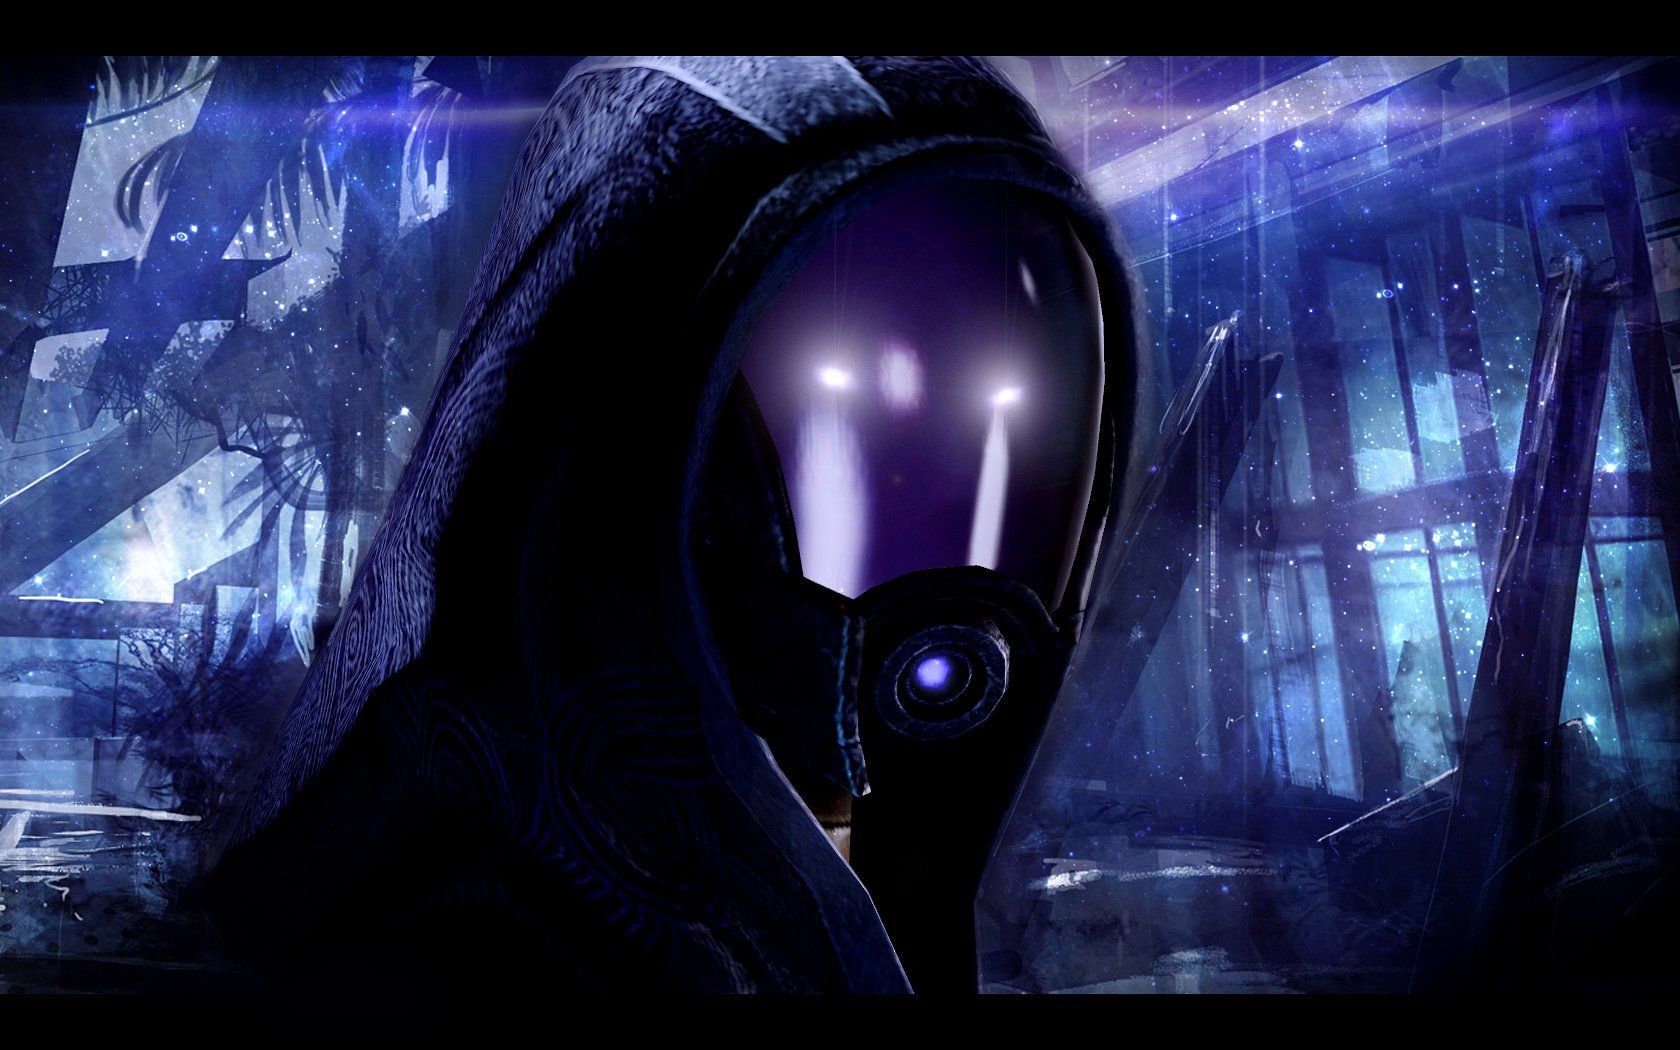 Mass Effect Tali Zorah nar Rayya wallpaper 1680x1050 242751